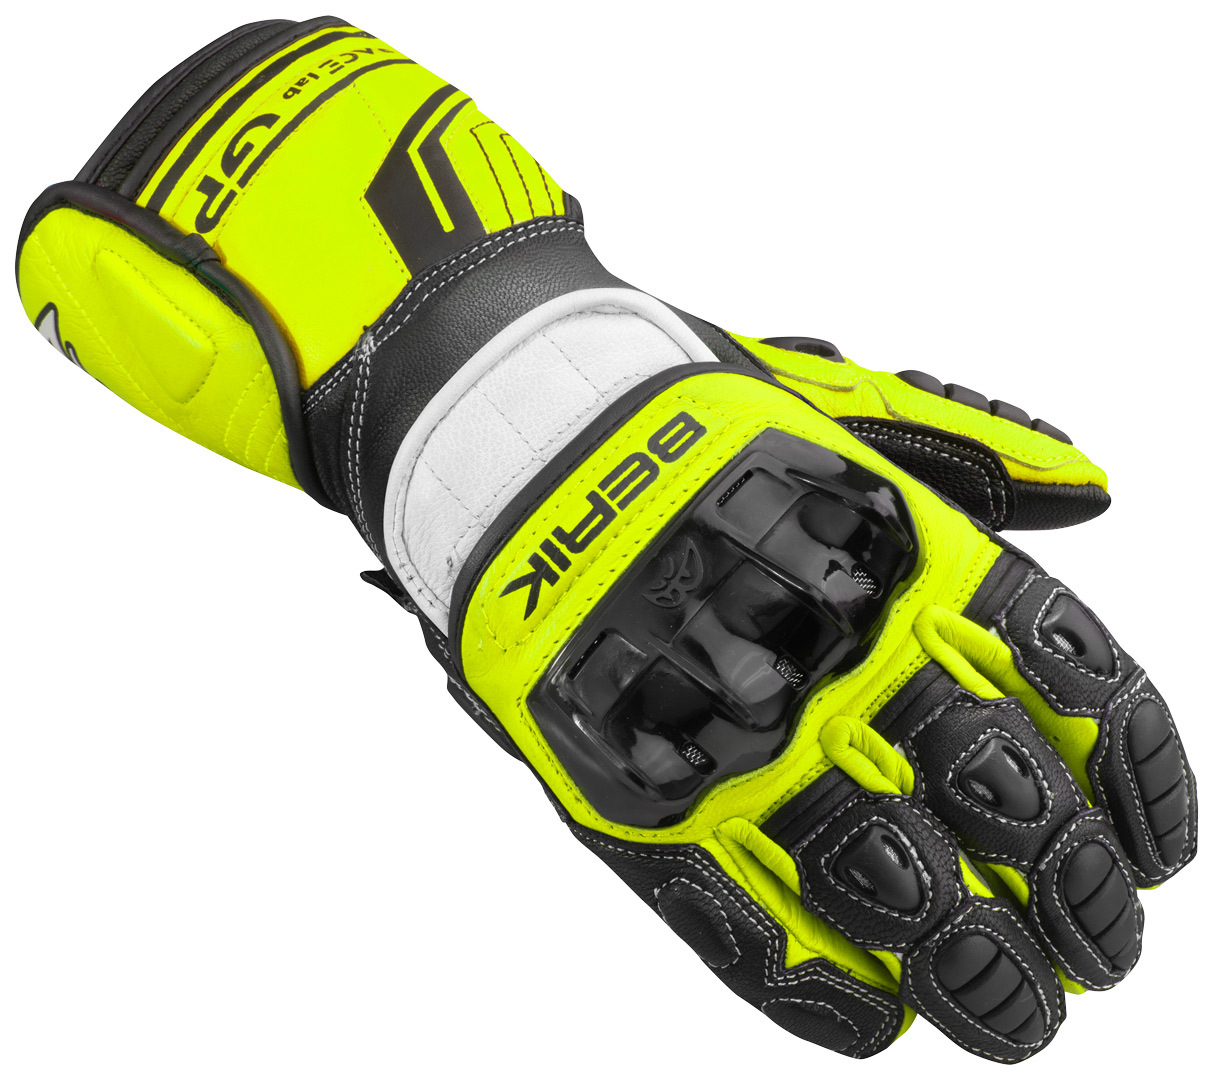 Мотоциклетные перчатки Berik Track Pro с регулируемыми запястьями, черный/белый/желтый мотоциклетные перчатки track pro berik белый черный